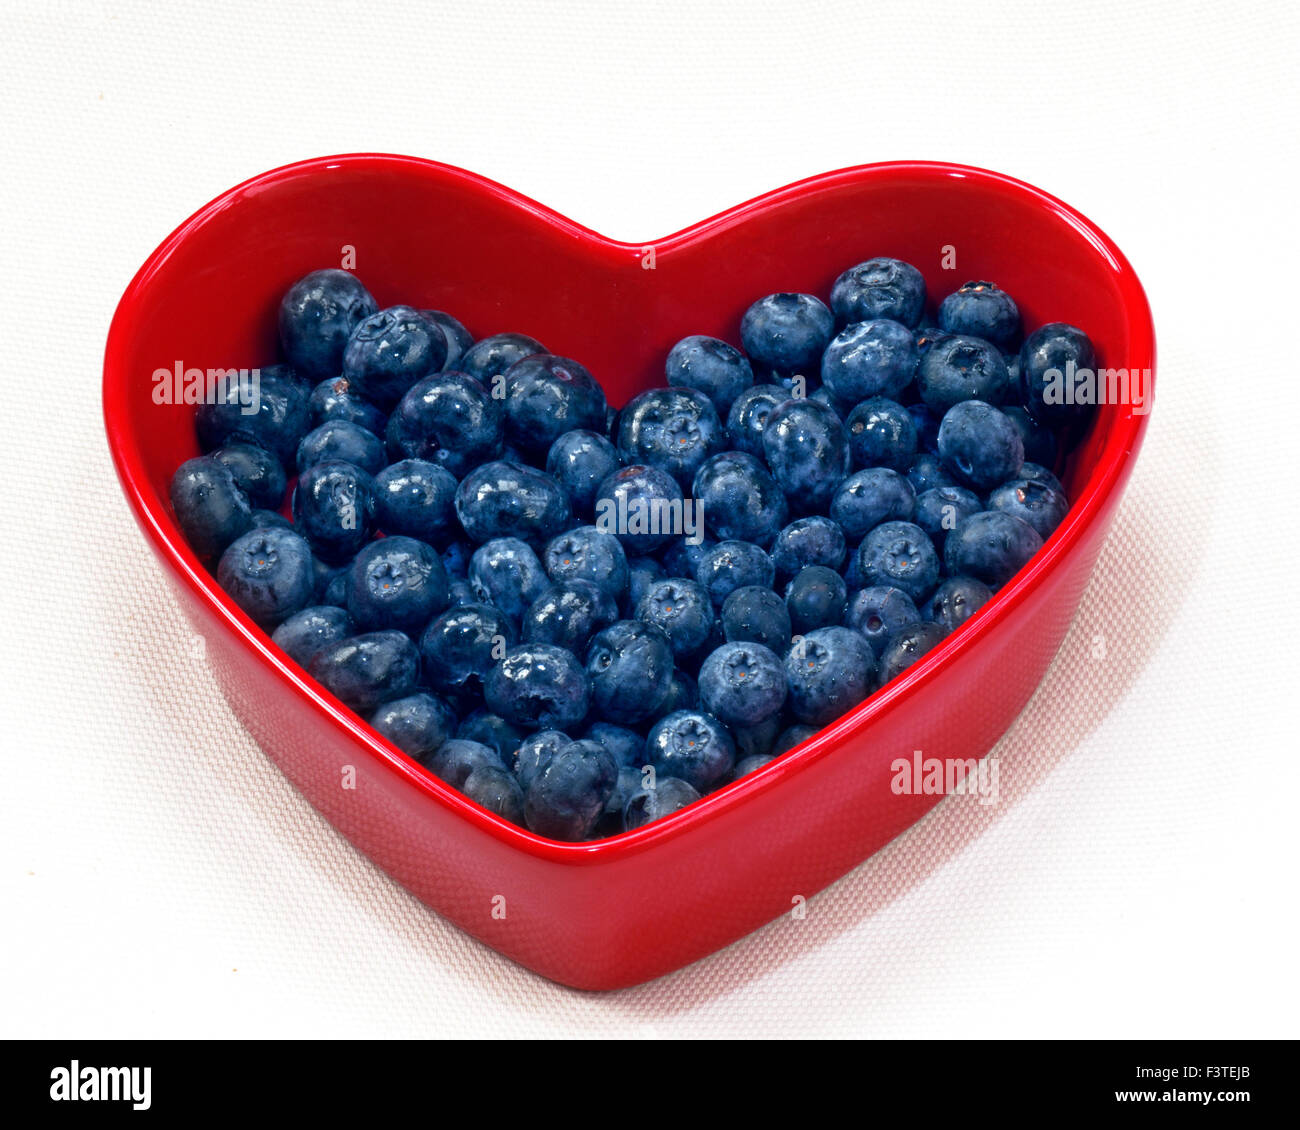 Heidelbeeren HERZ TELLER Gesundheit Ernährung Herz Konzept / Heidelbeeren im rote Herzförmige Schale auf weißem Hintergrund Stockfoto